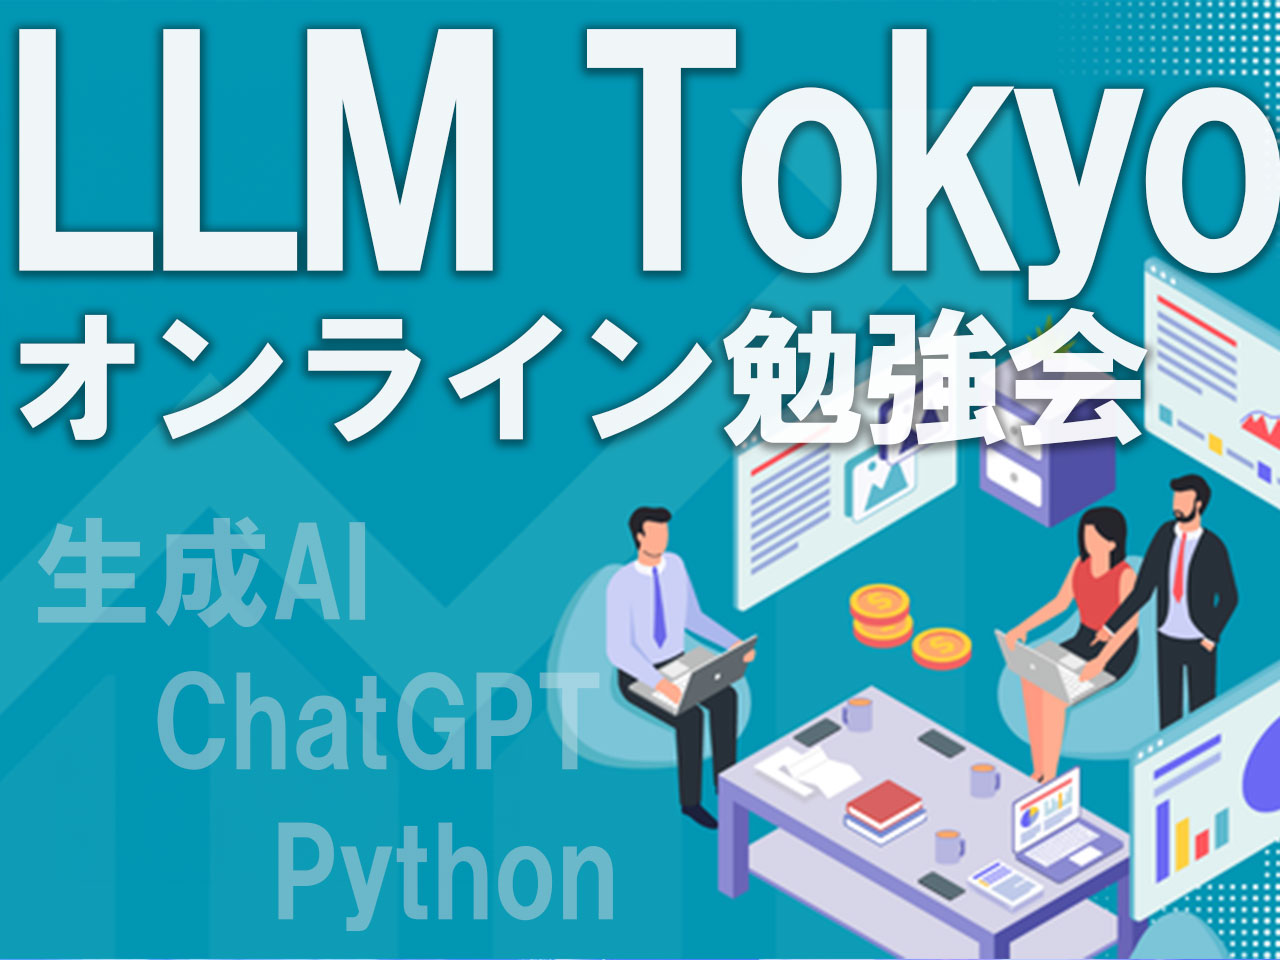 生成AIに関する情報発信にも力を入れ、毎週、誰でも無料で参加できる「LLM Tokyo」というオンライン勉強会を開催。